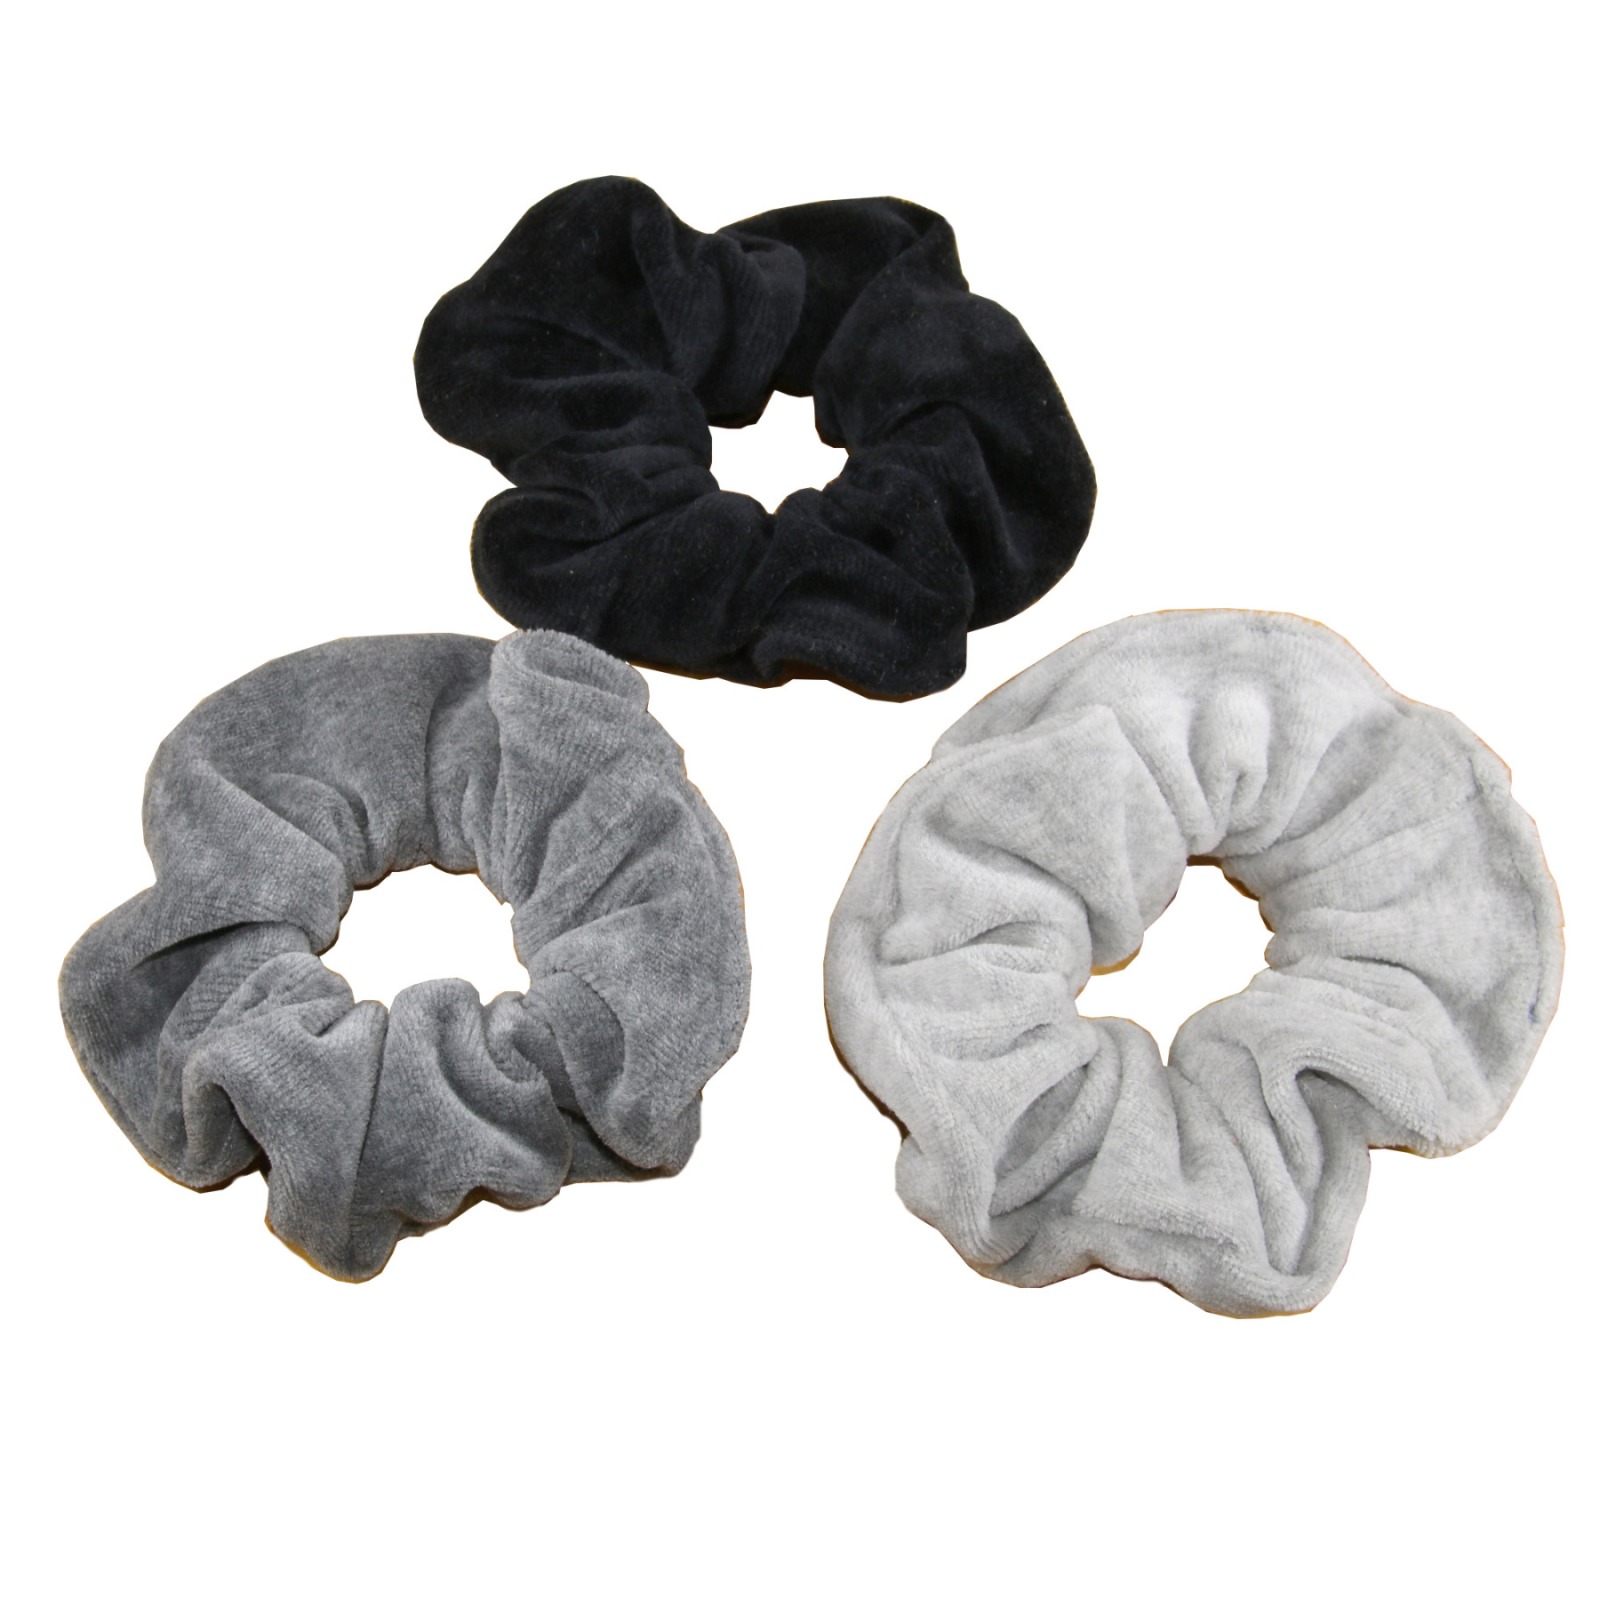 Scrunchies - hair ties - set of 3 - grey & black colours